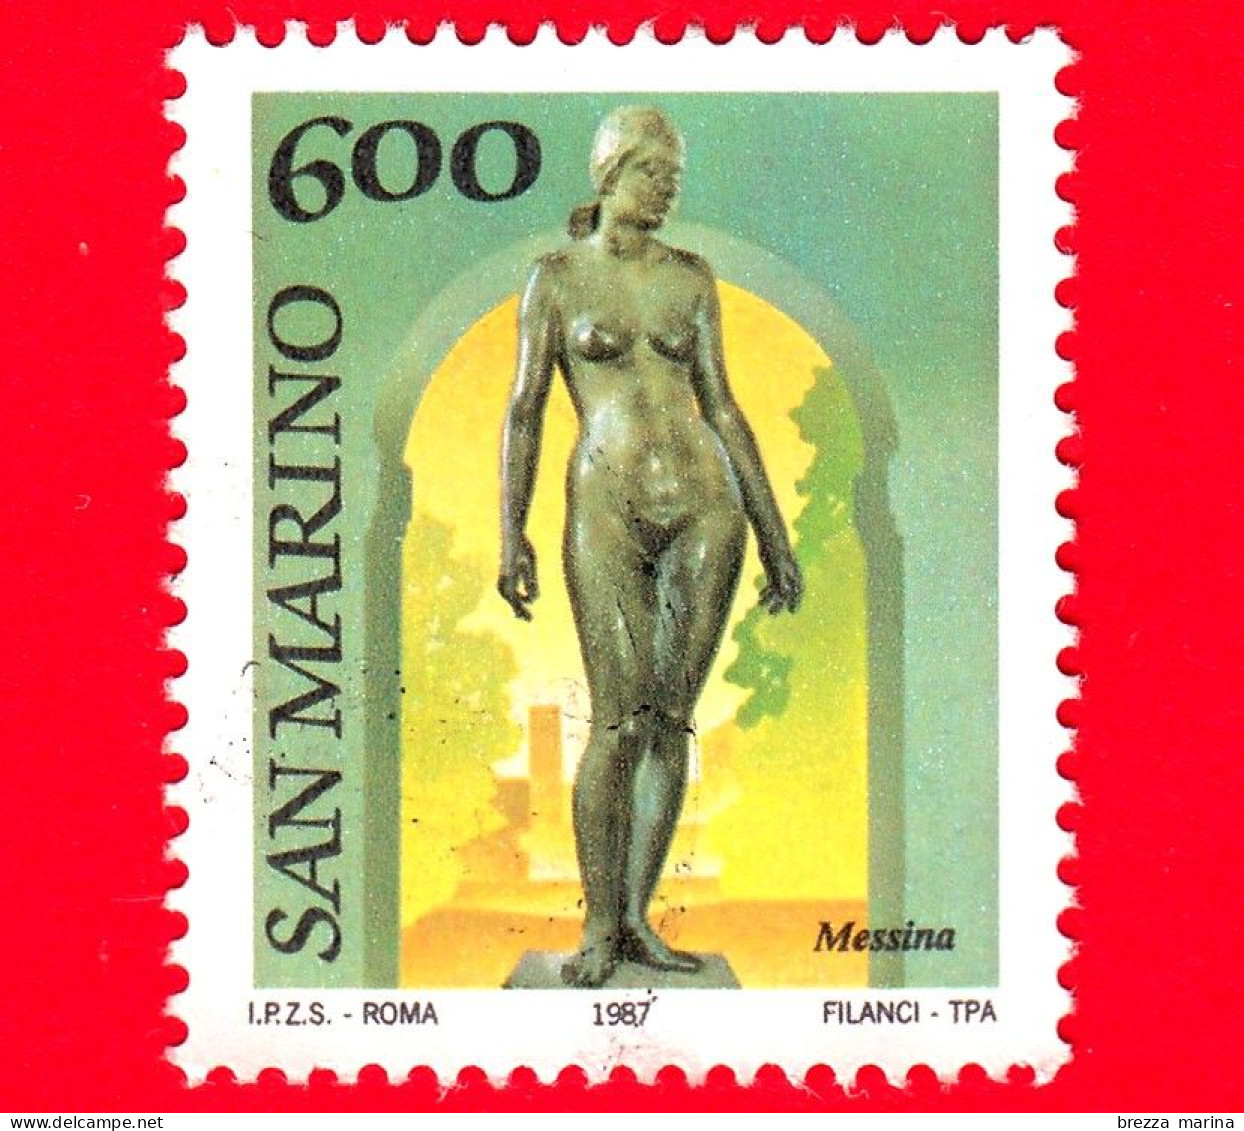 SAN MARINO - Usato - 1987 - Museo All'aperto - Scultura Di Messina - Nudo - 600 - Gebraucht